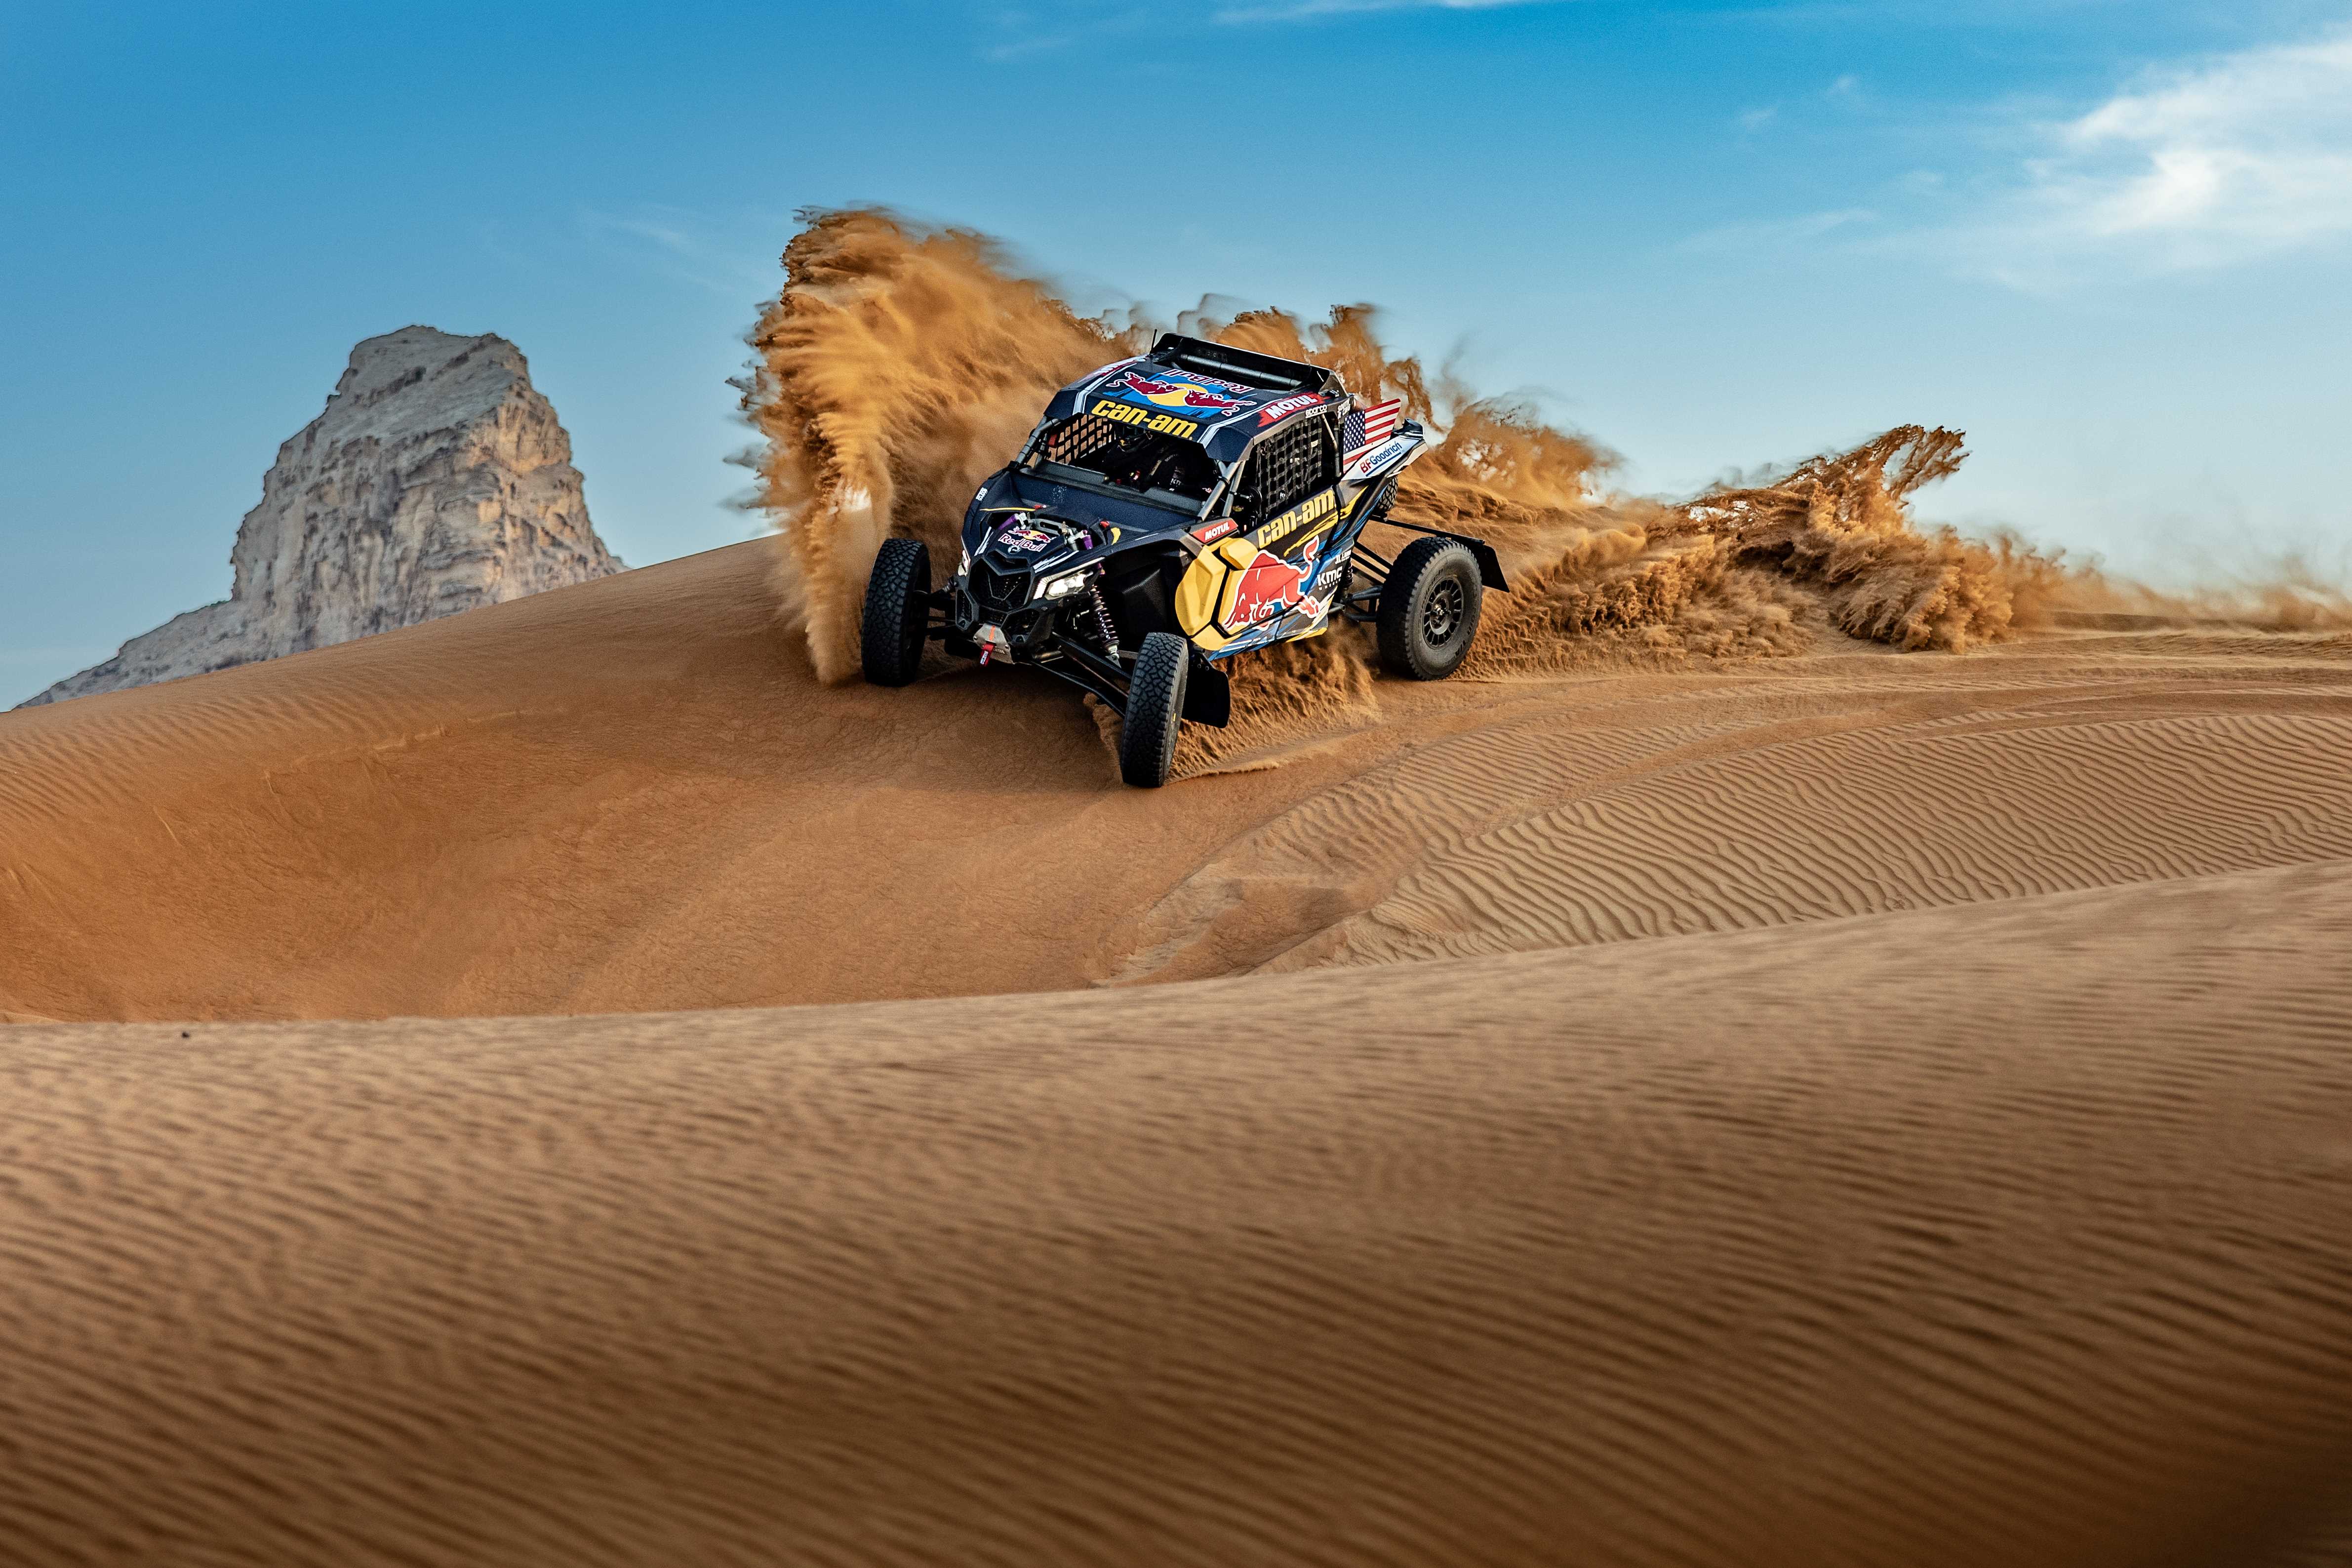 Maverick andando em uma duna de areia na Arábia Saudita